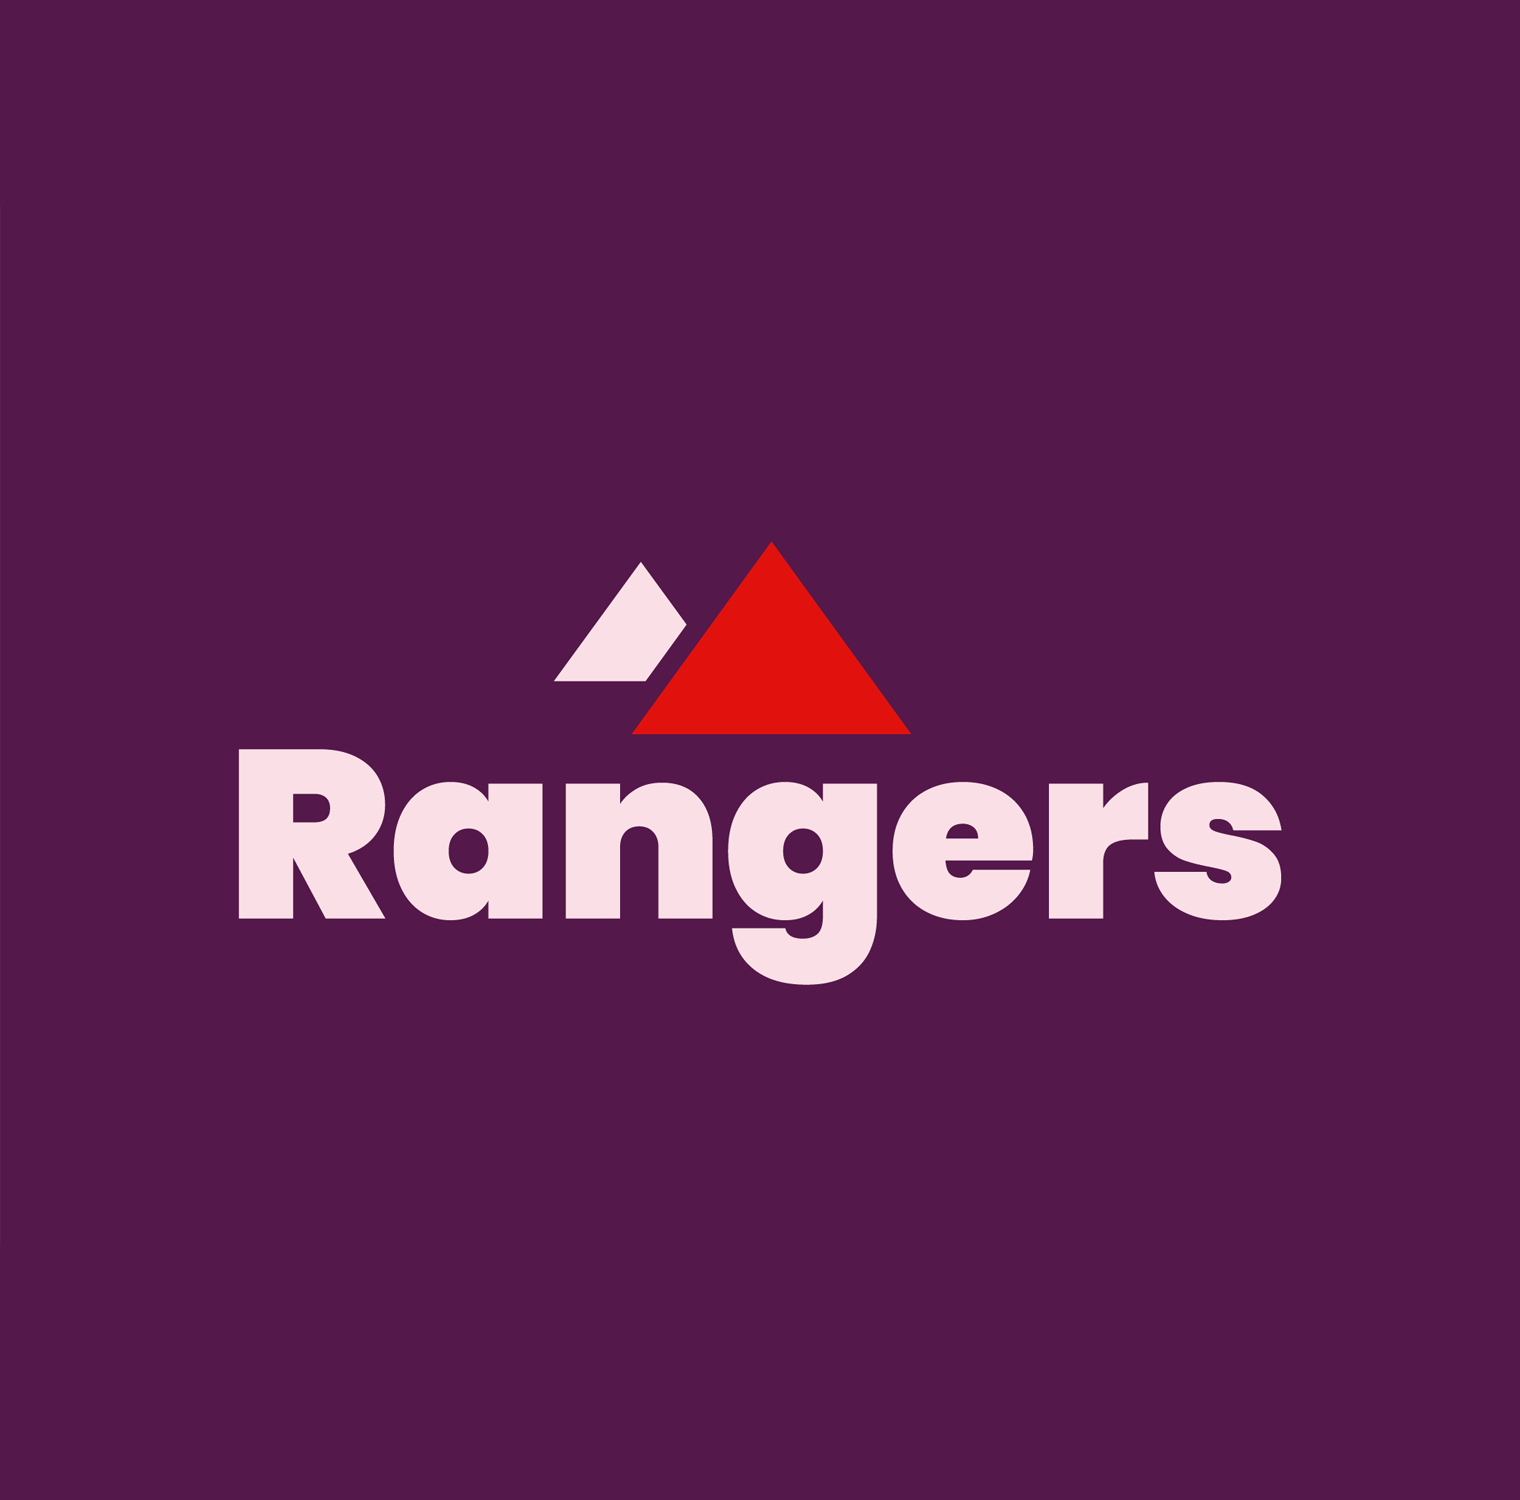 Rangers written in light purple on dark purple background